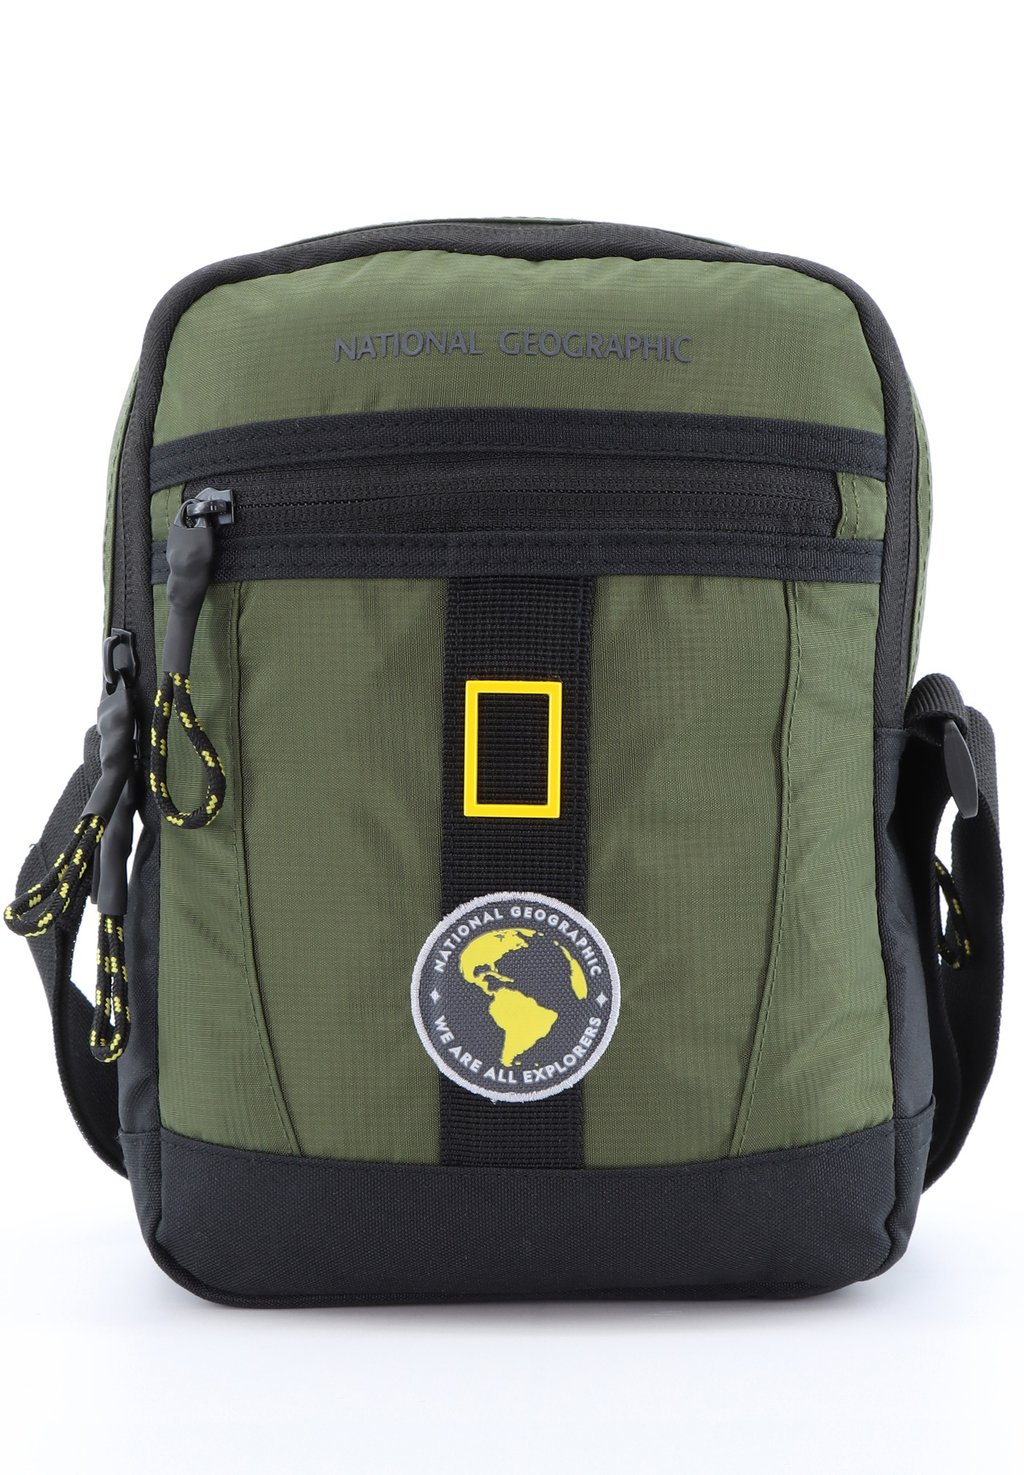 Сумка через плечо NEW EXPLORER National Geographic, цвет khaki сумка через плечо national geographic new explorer черный